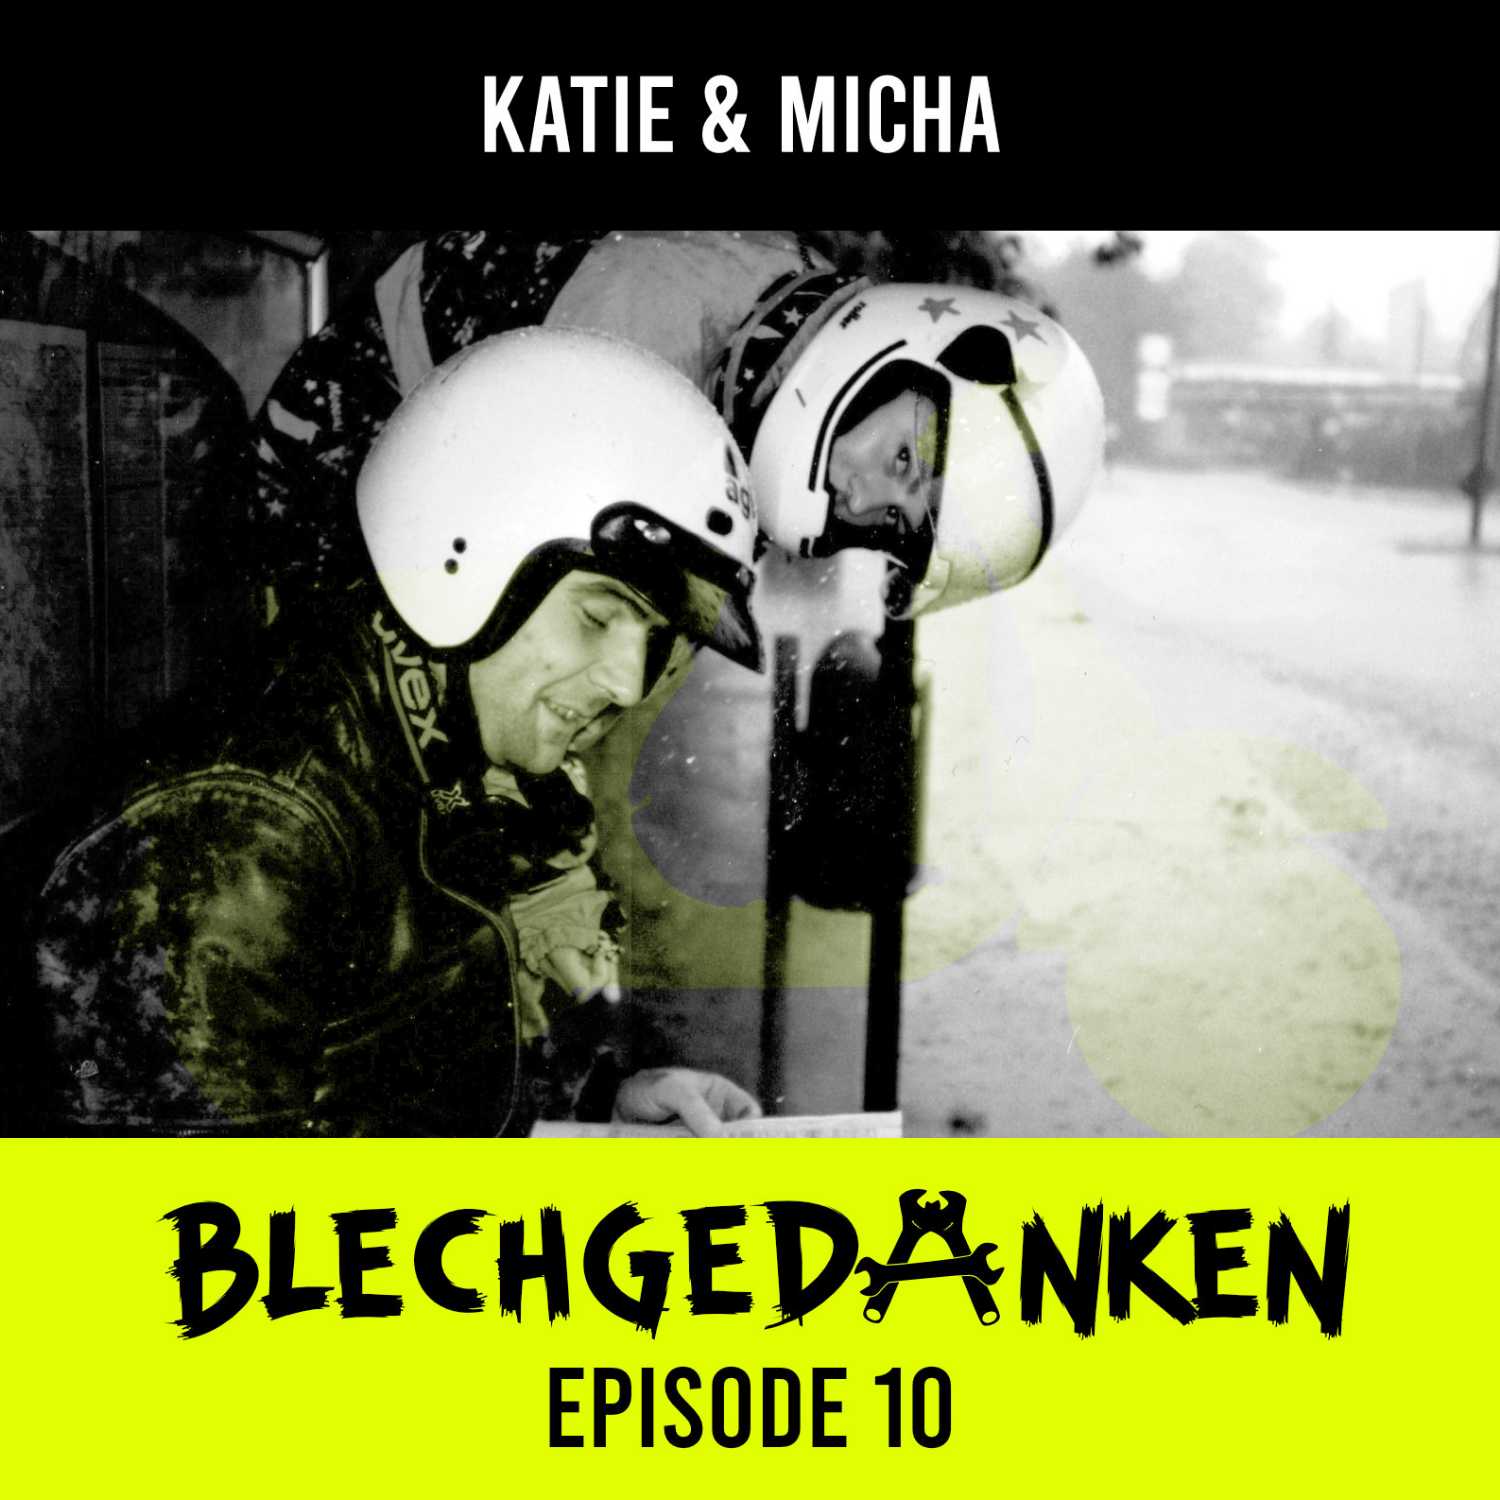 Blechgedanken Episode 10 - Katie & Micha – Rückblick auf die hannoveraner Vespageschichten​​